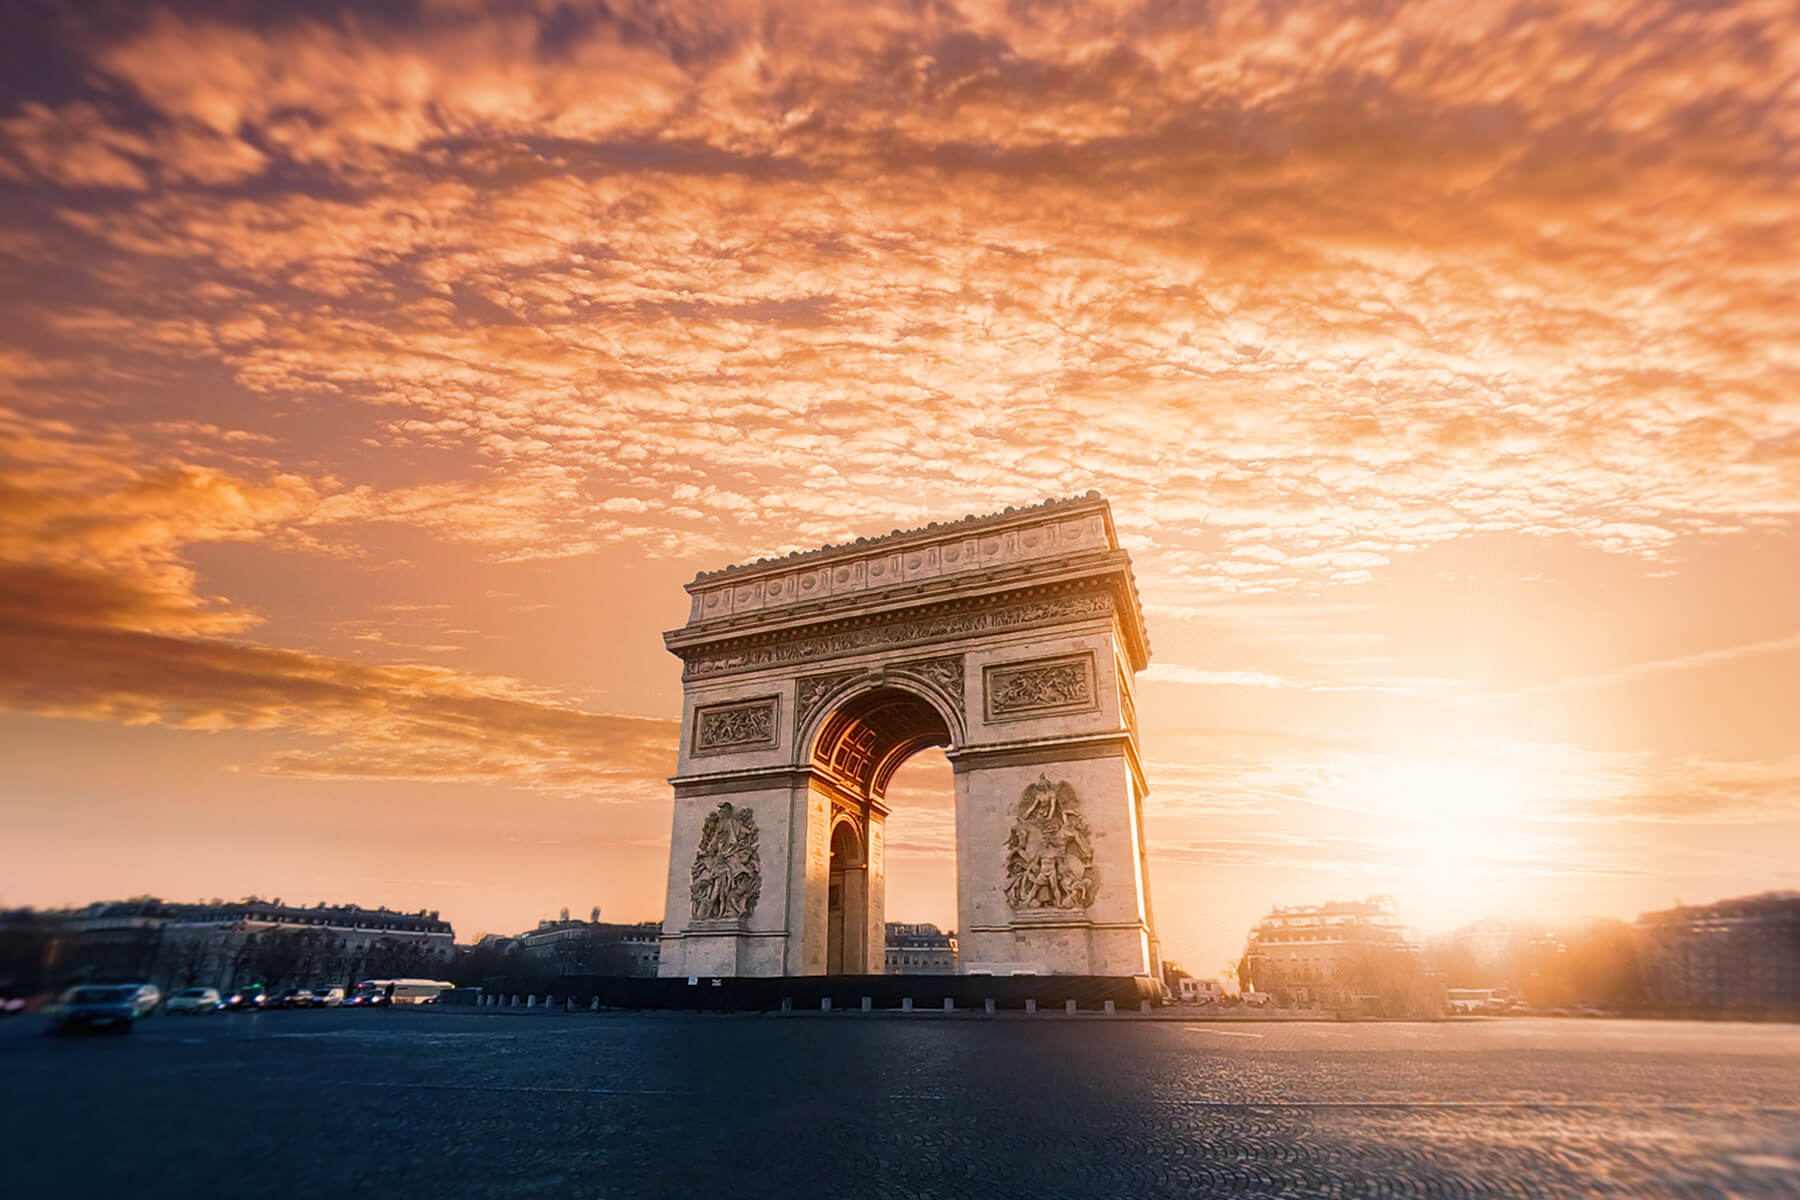 Tour du lịch Paris của Vietfoot travel 2022/2023 168810